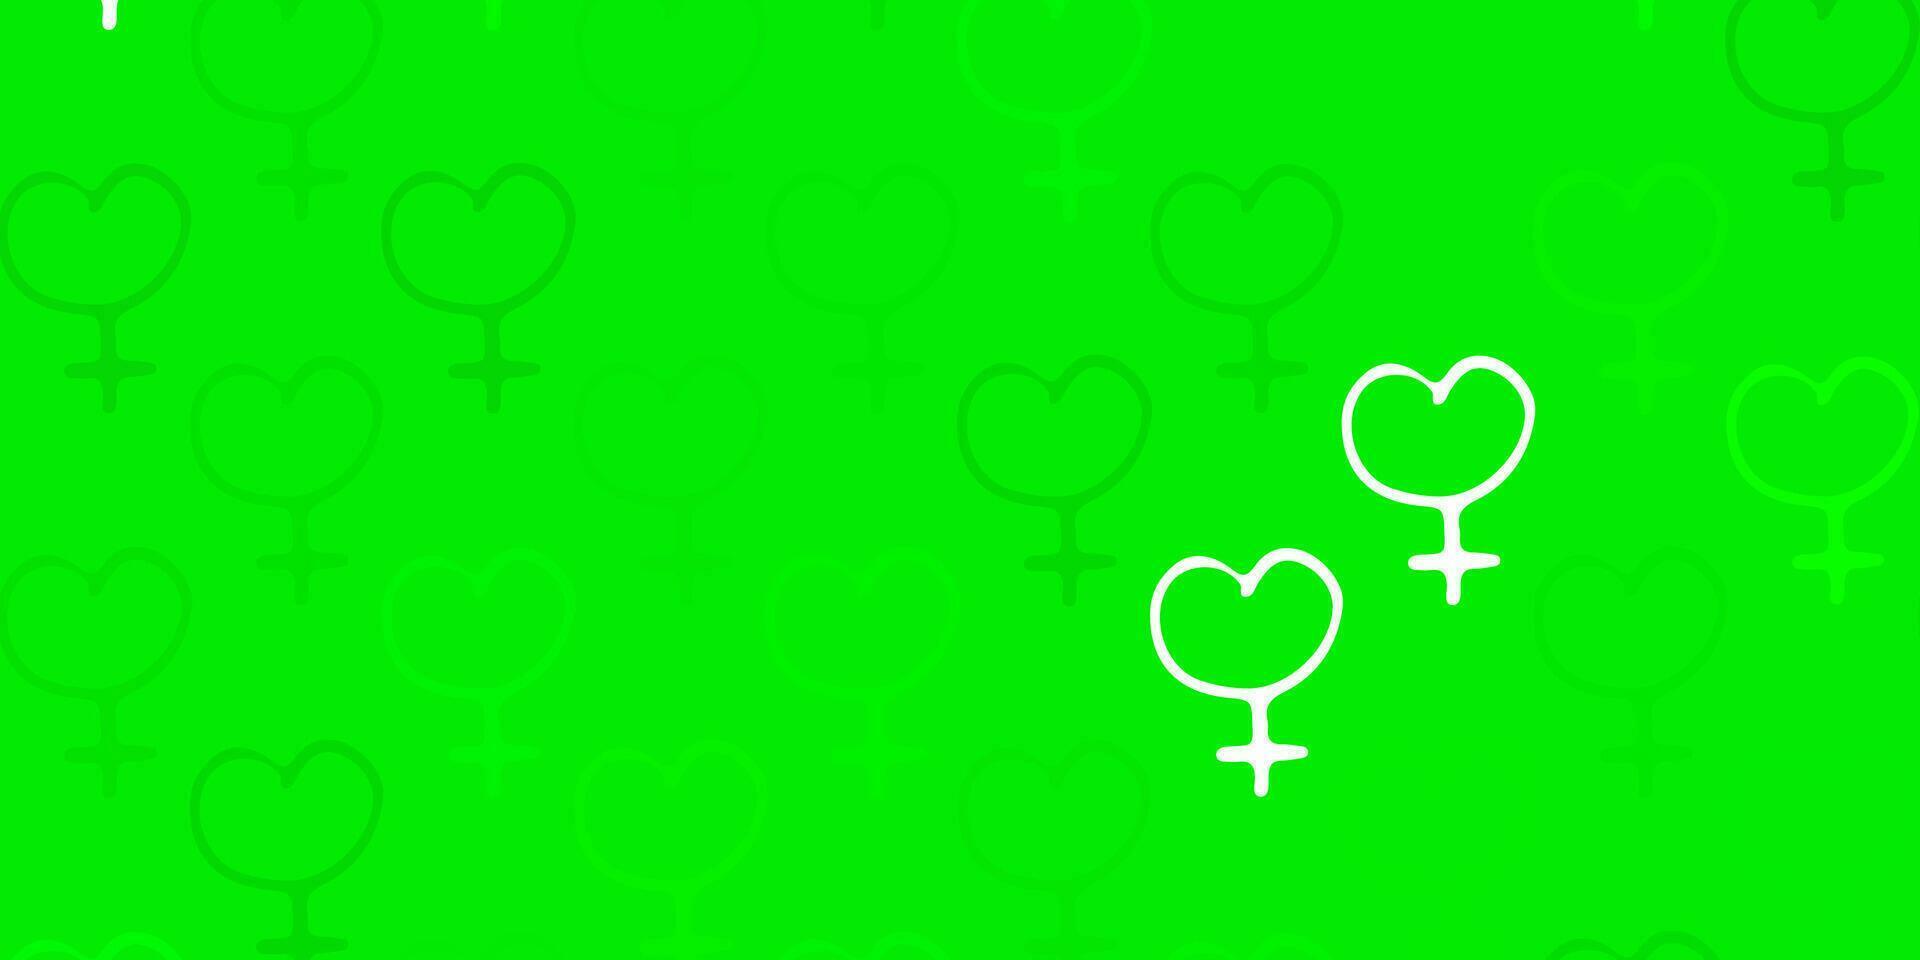 ljusgrönt vektormönster med feminismelement. vektor